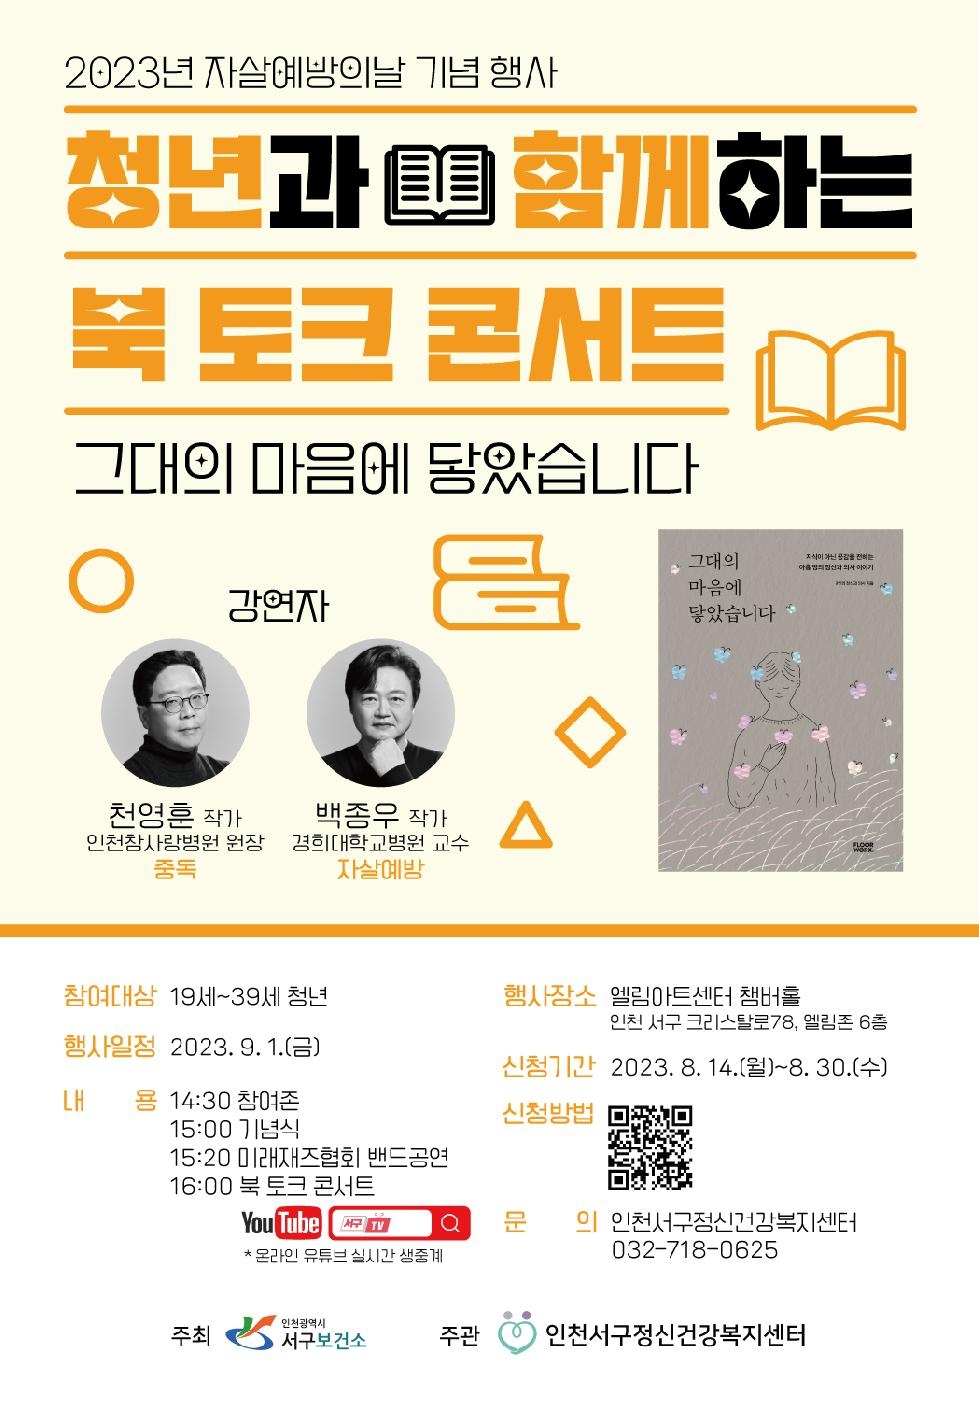 인천 서구, 자살예방의 날 맞아 ‘작가와 함께하는 북 토크콘서트’